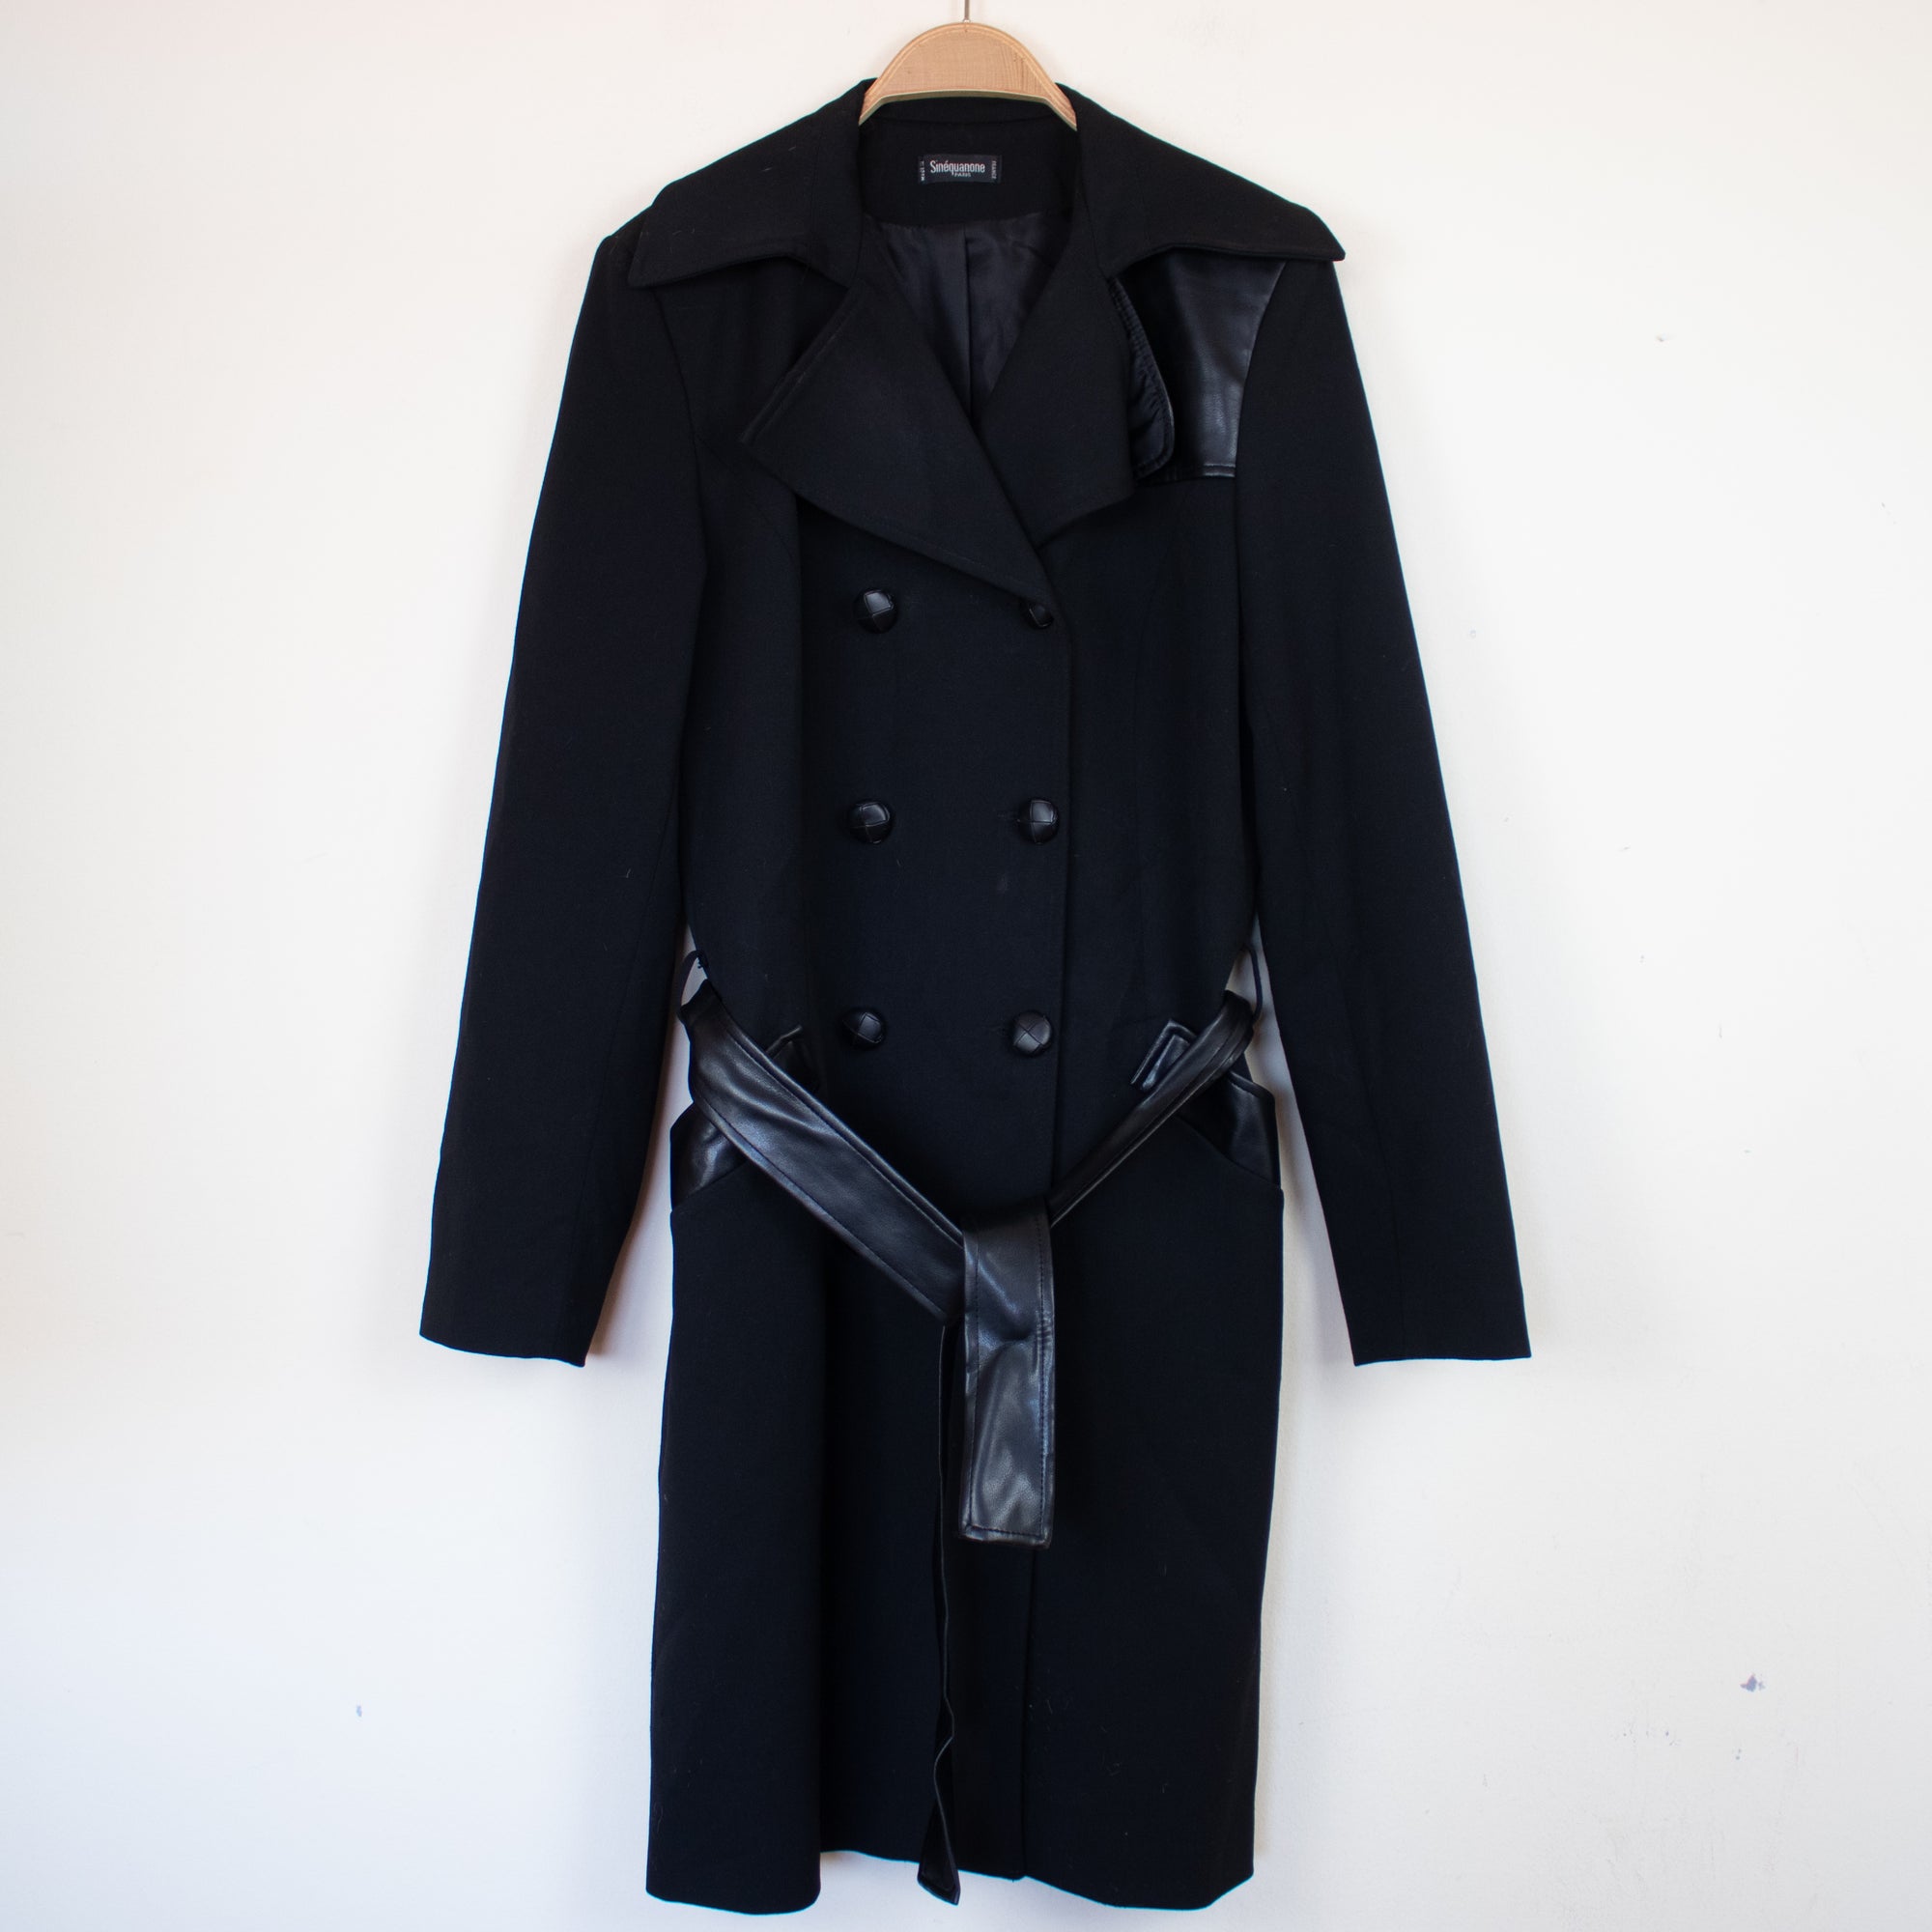 Sinequanone coat